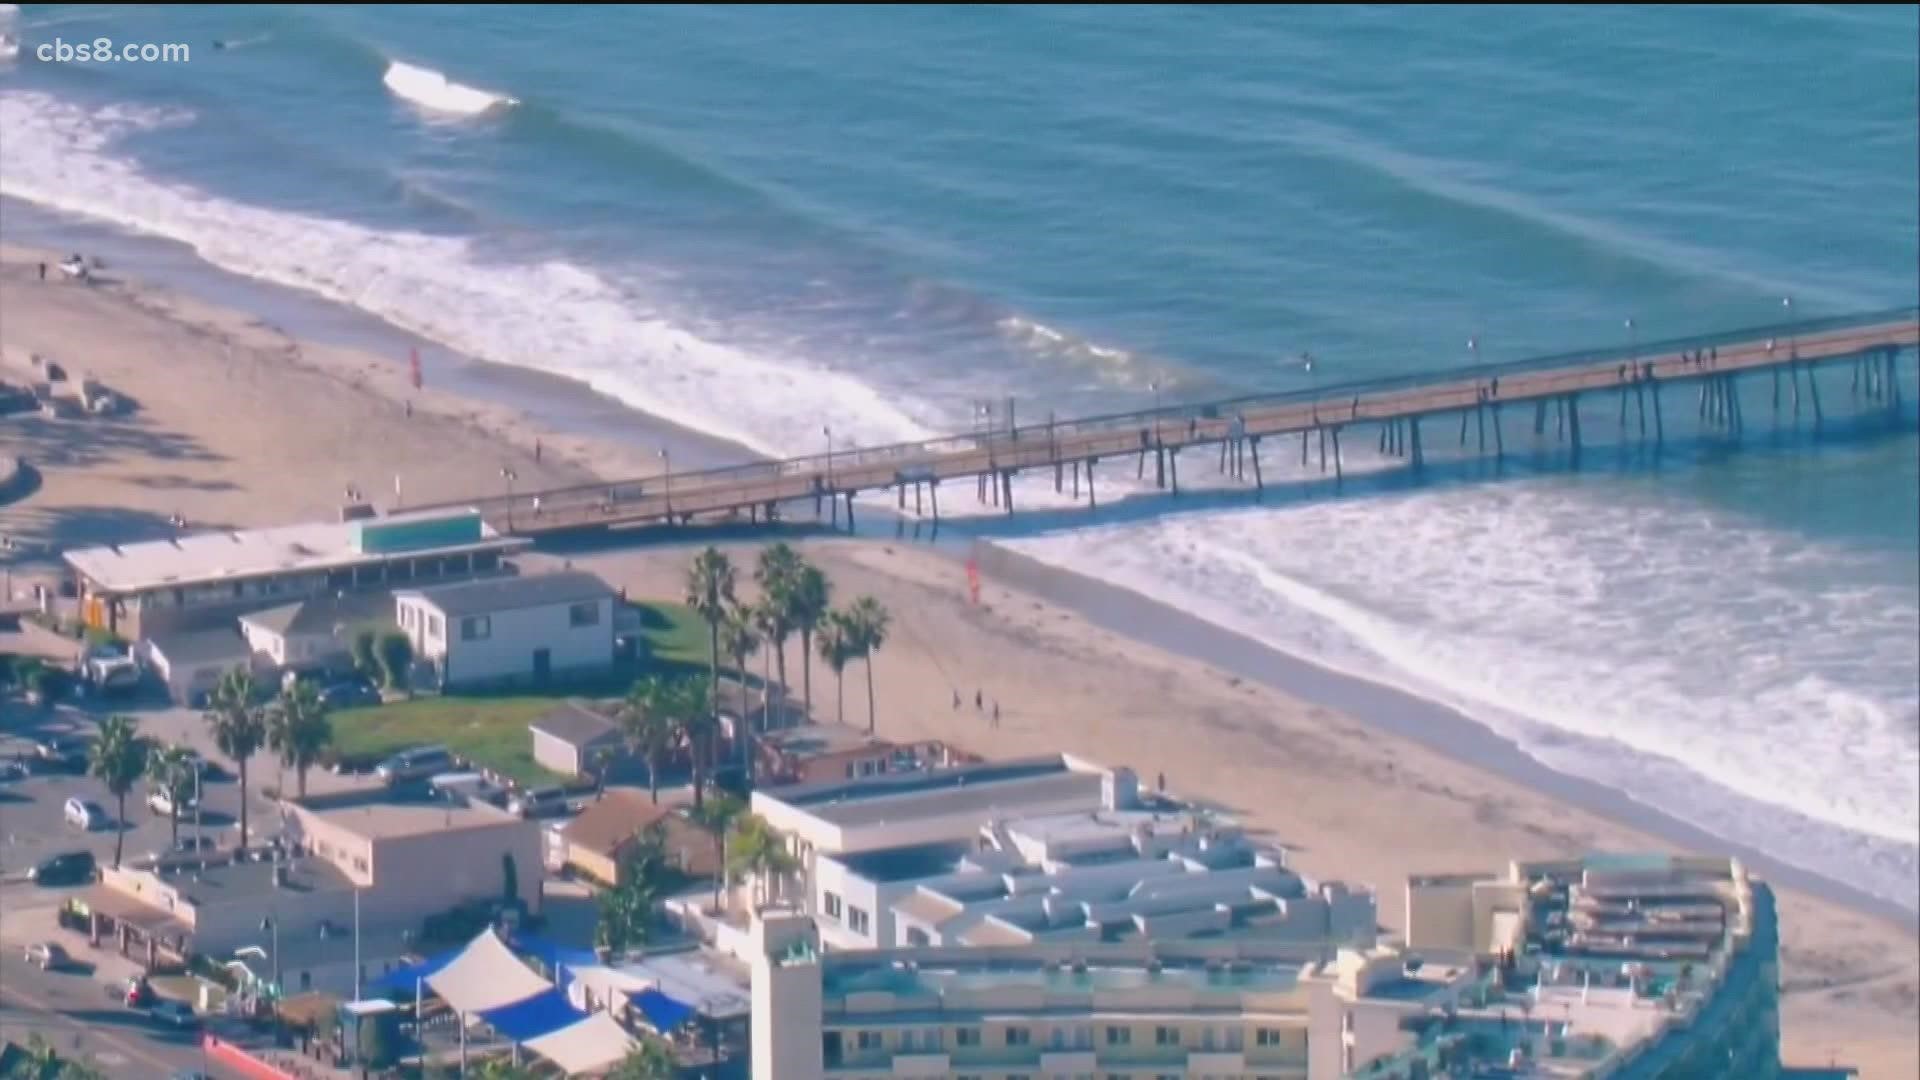 King Tides return to San Diego beaches